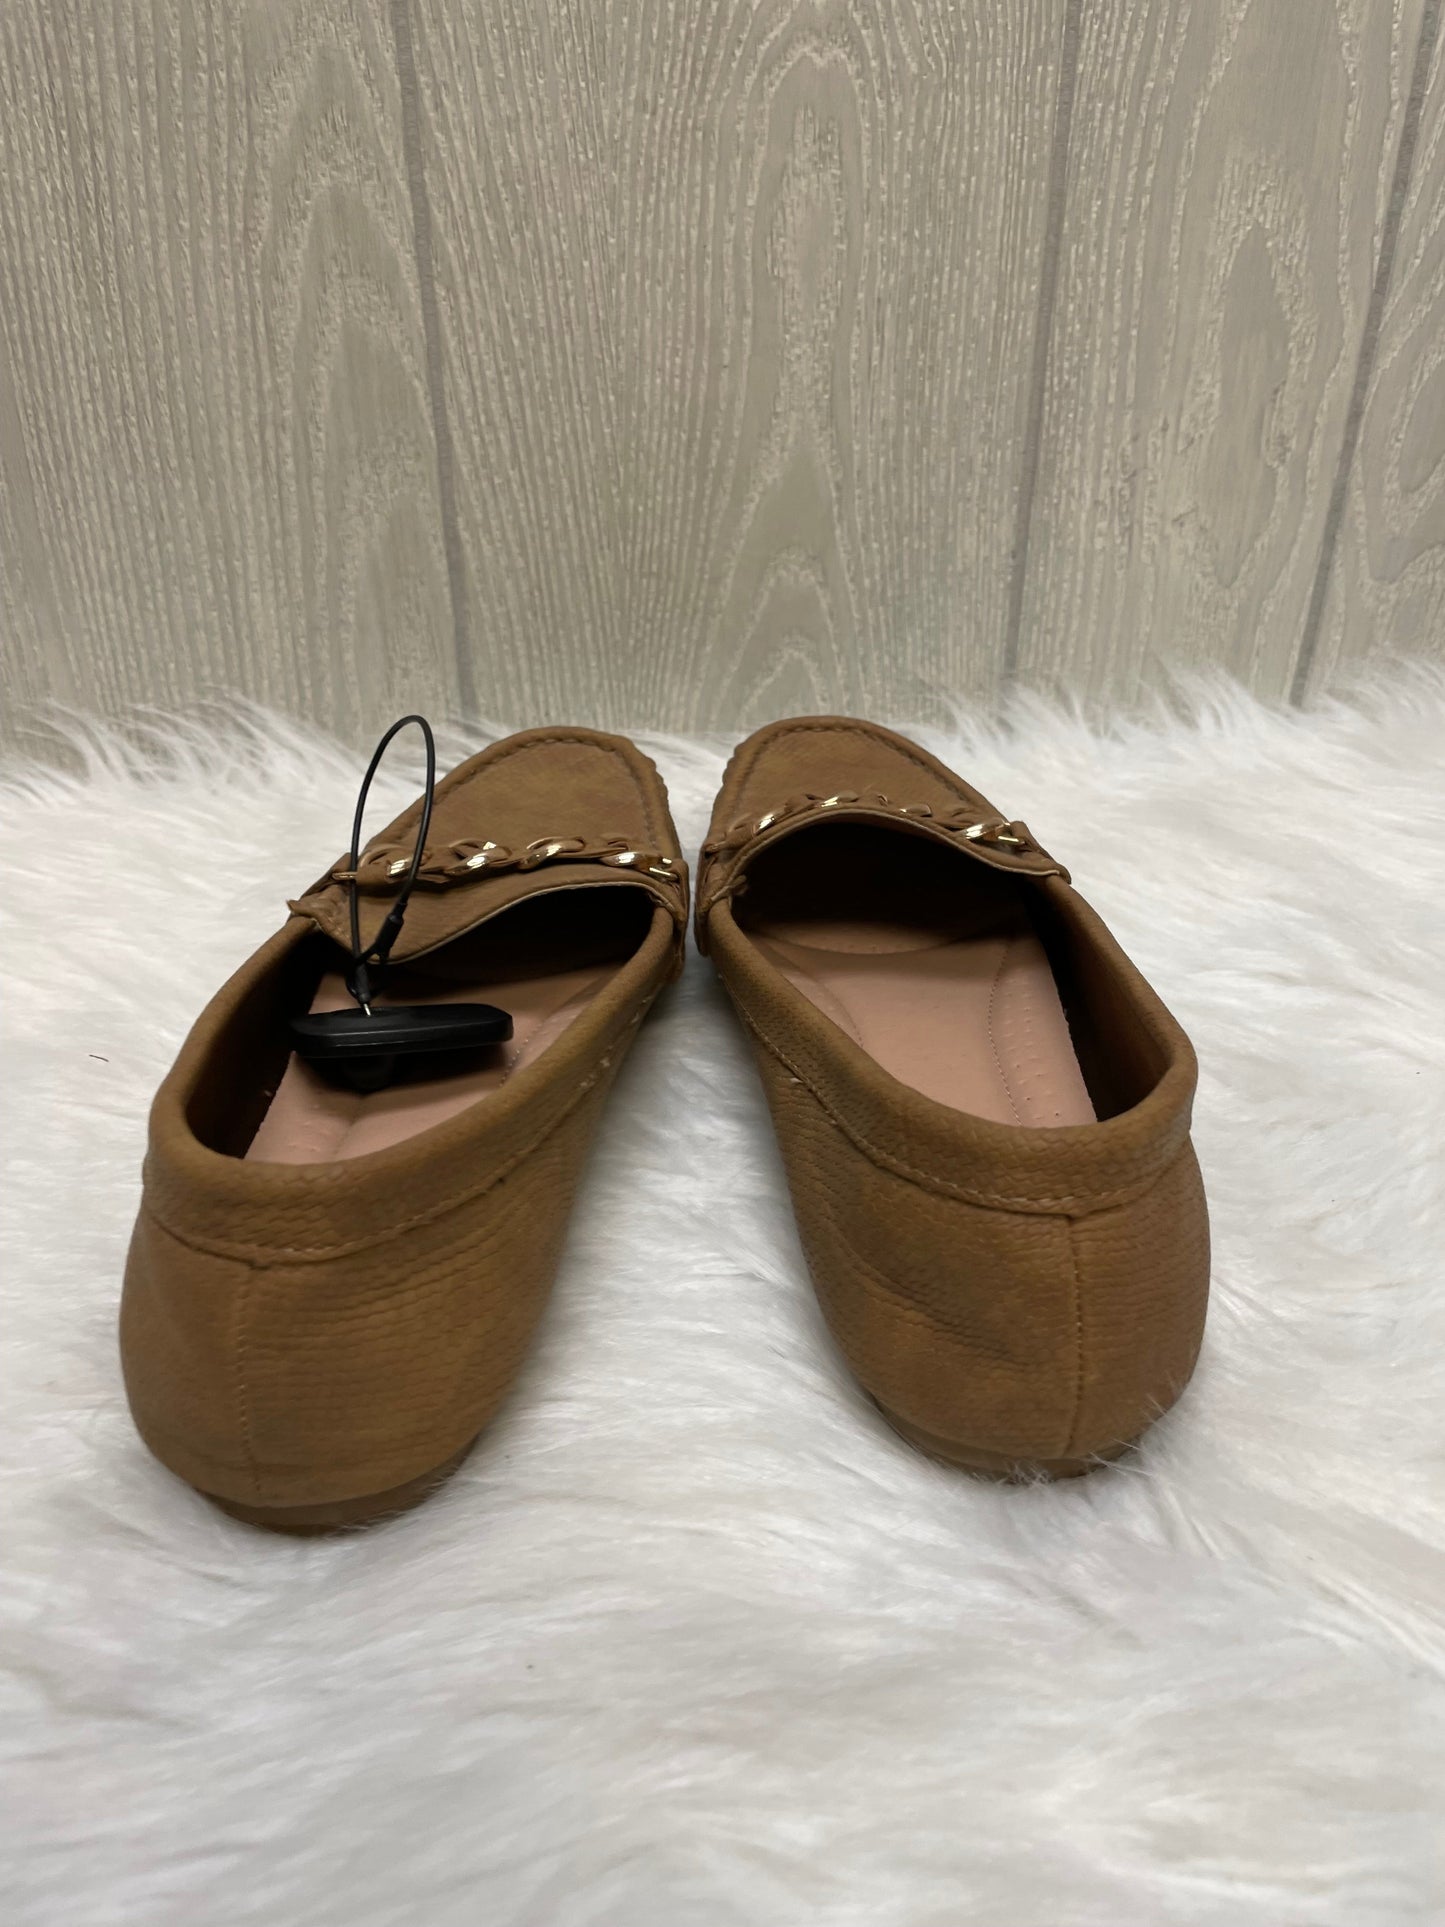 Brown & Gold Shoes Flats Lauren Blakwell, Size 8